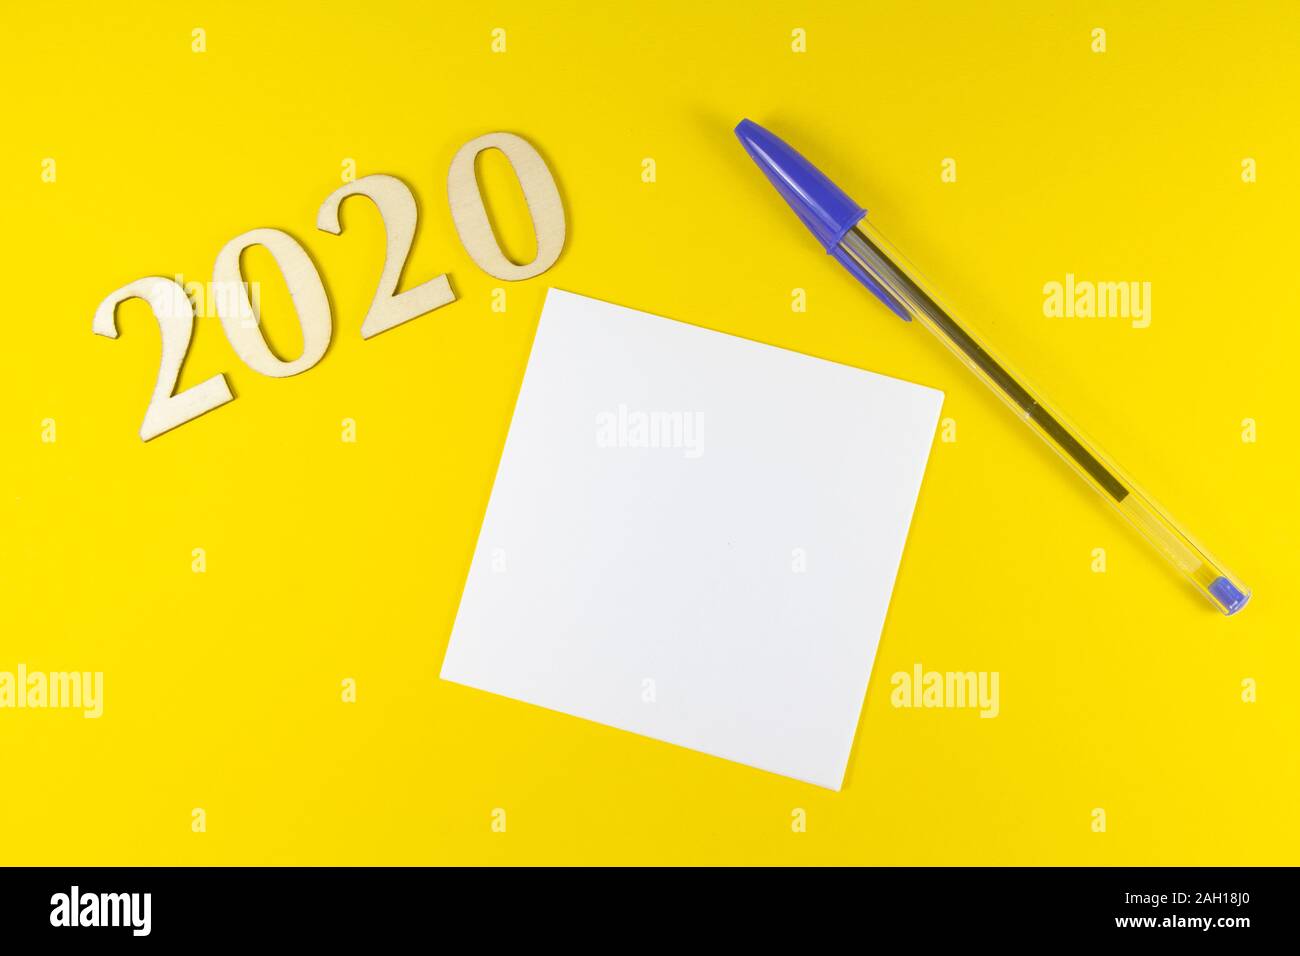 Stylo, papier et en 2020 figures en bois sur fond jaune Banque D'Images